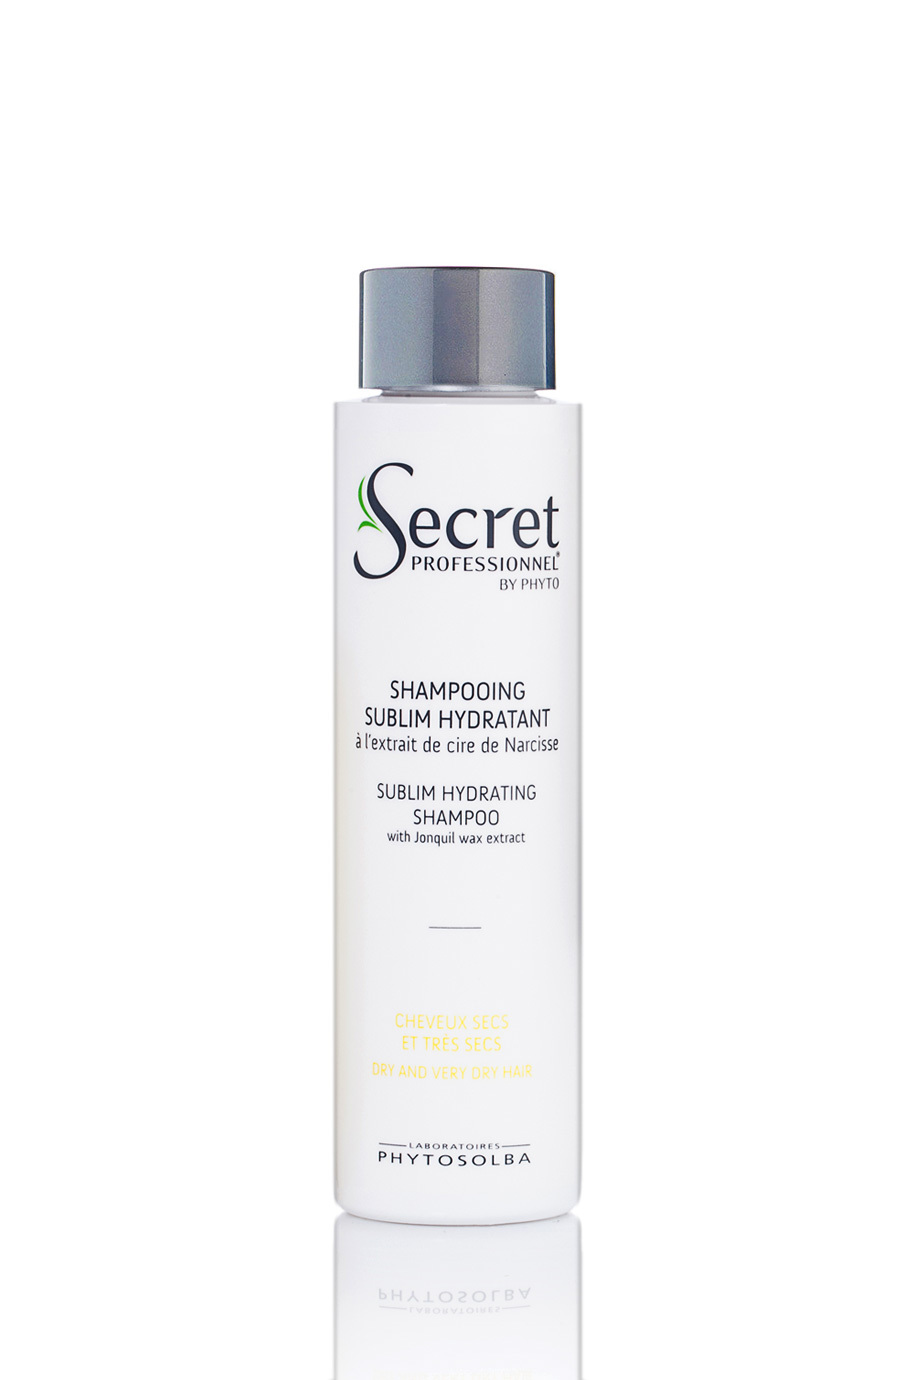 Shampooing Sublim Hydratant | Активно-увлажняющий шампунь с восковым экстрактом нарцисса для сухих тонких волос